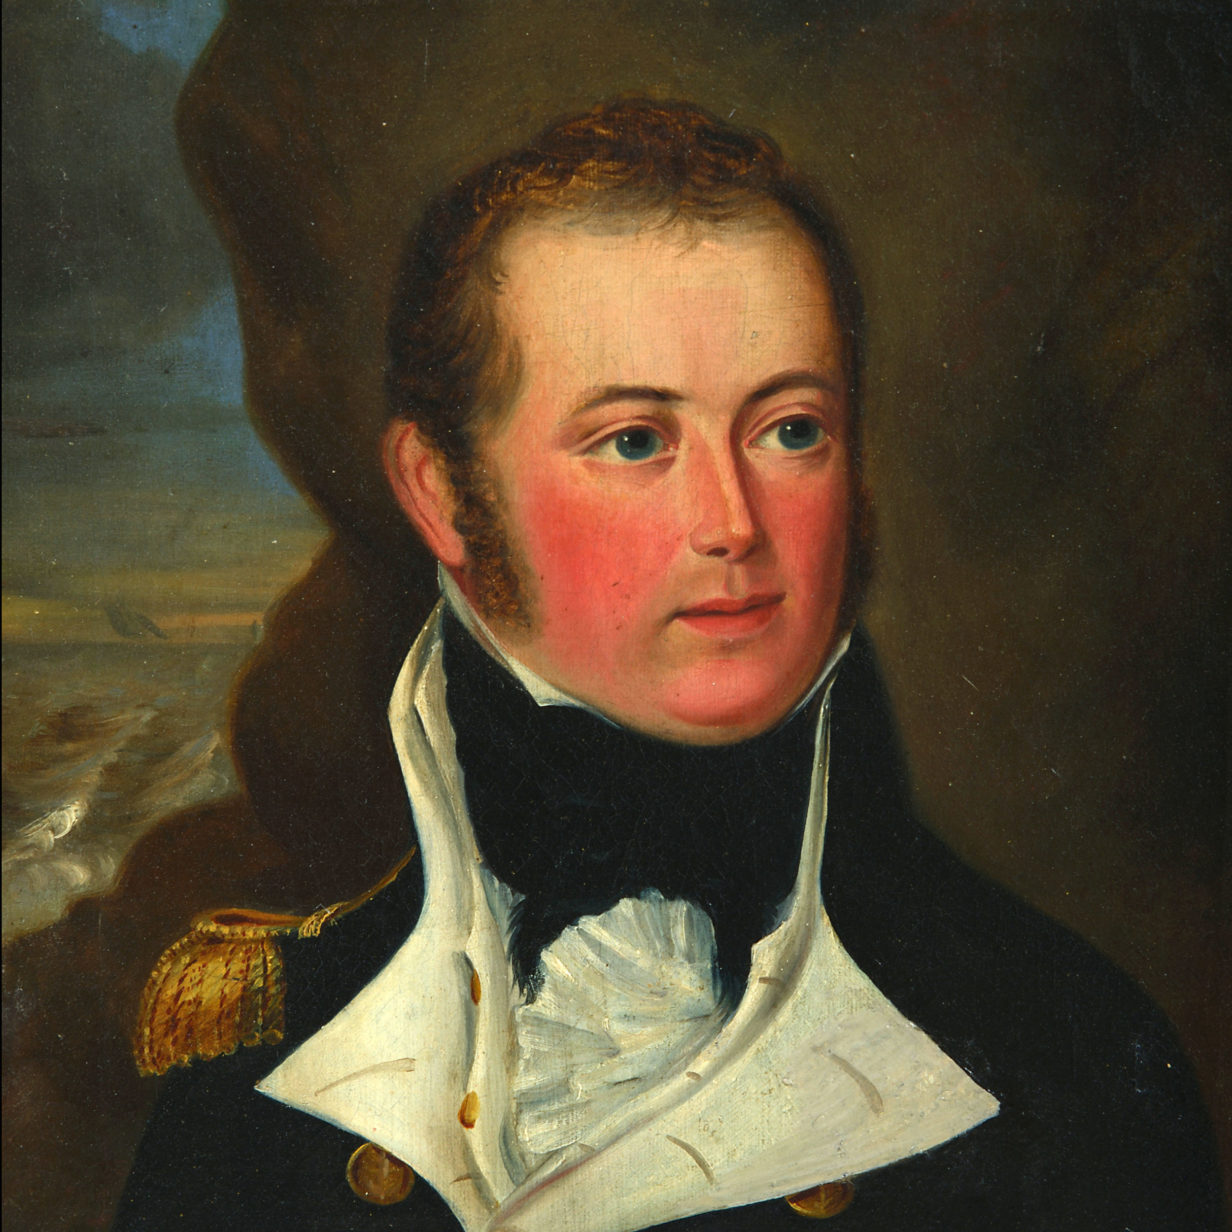 Portrait of lt. Edward elers r. N. (1782-1815)